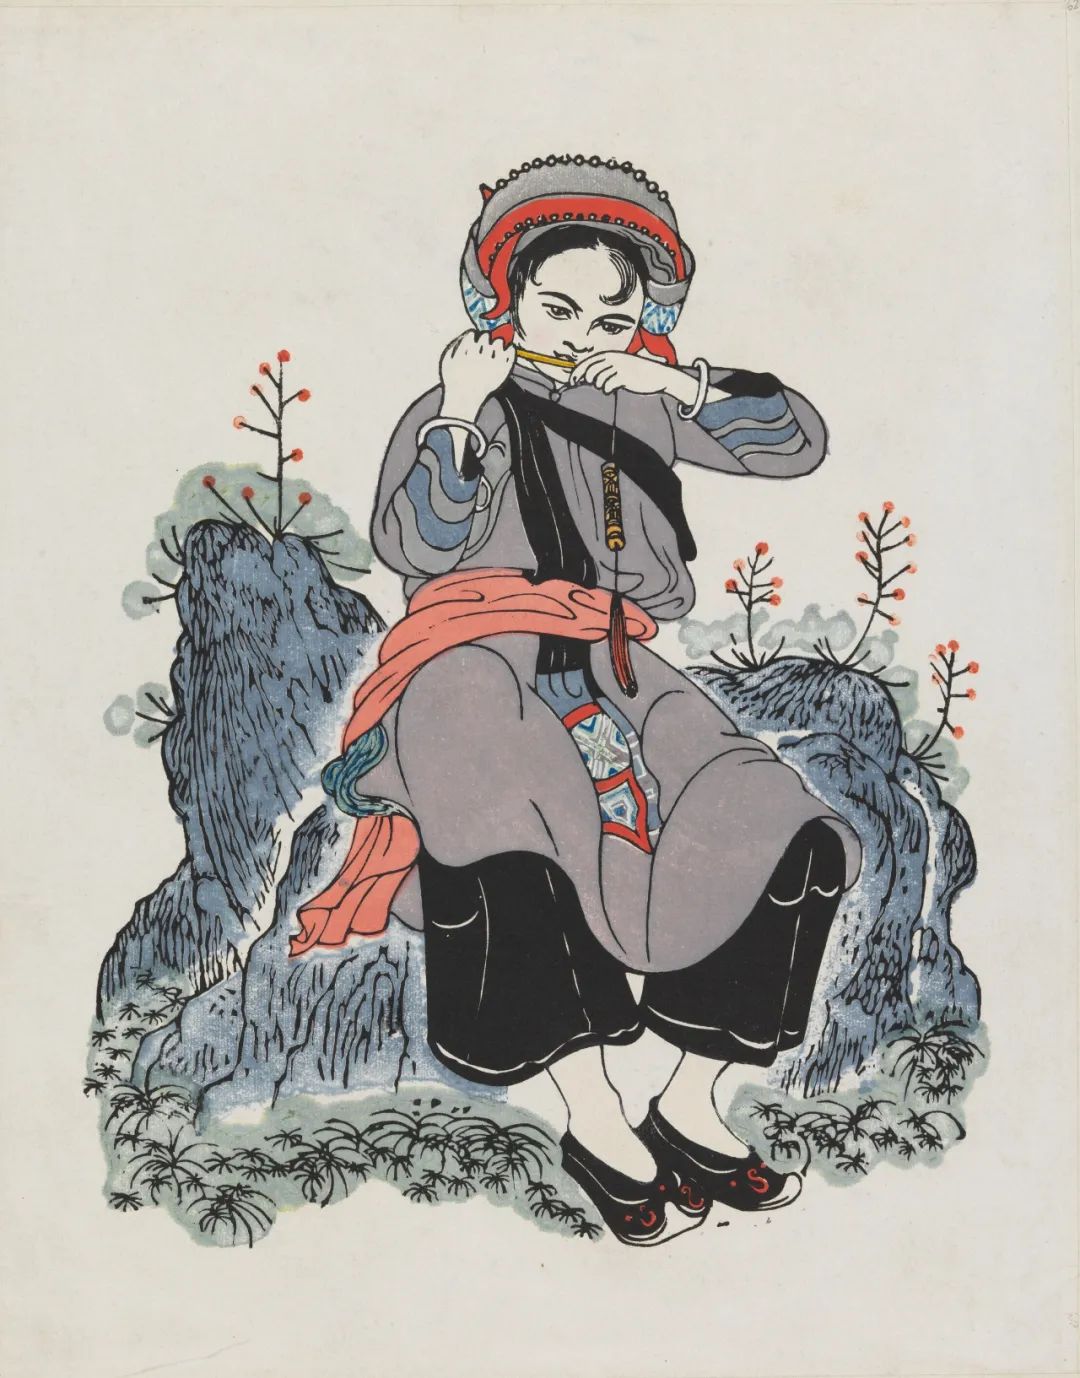 阿诗玛 黄永玉 插画  21×15cm 1956年 中国美术馆藏  原著 彝族撒尼人经典传说《阿诗玛》